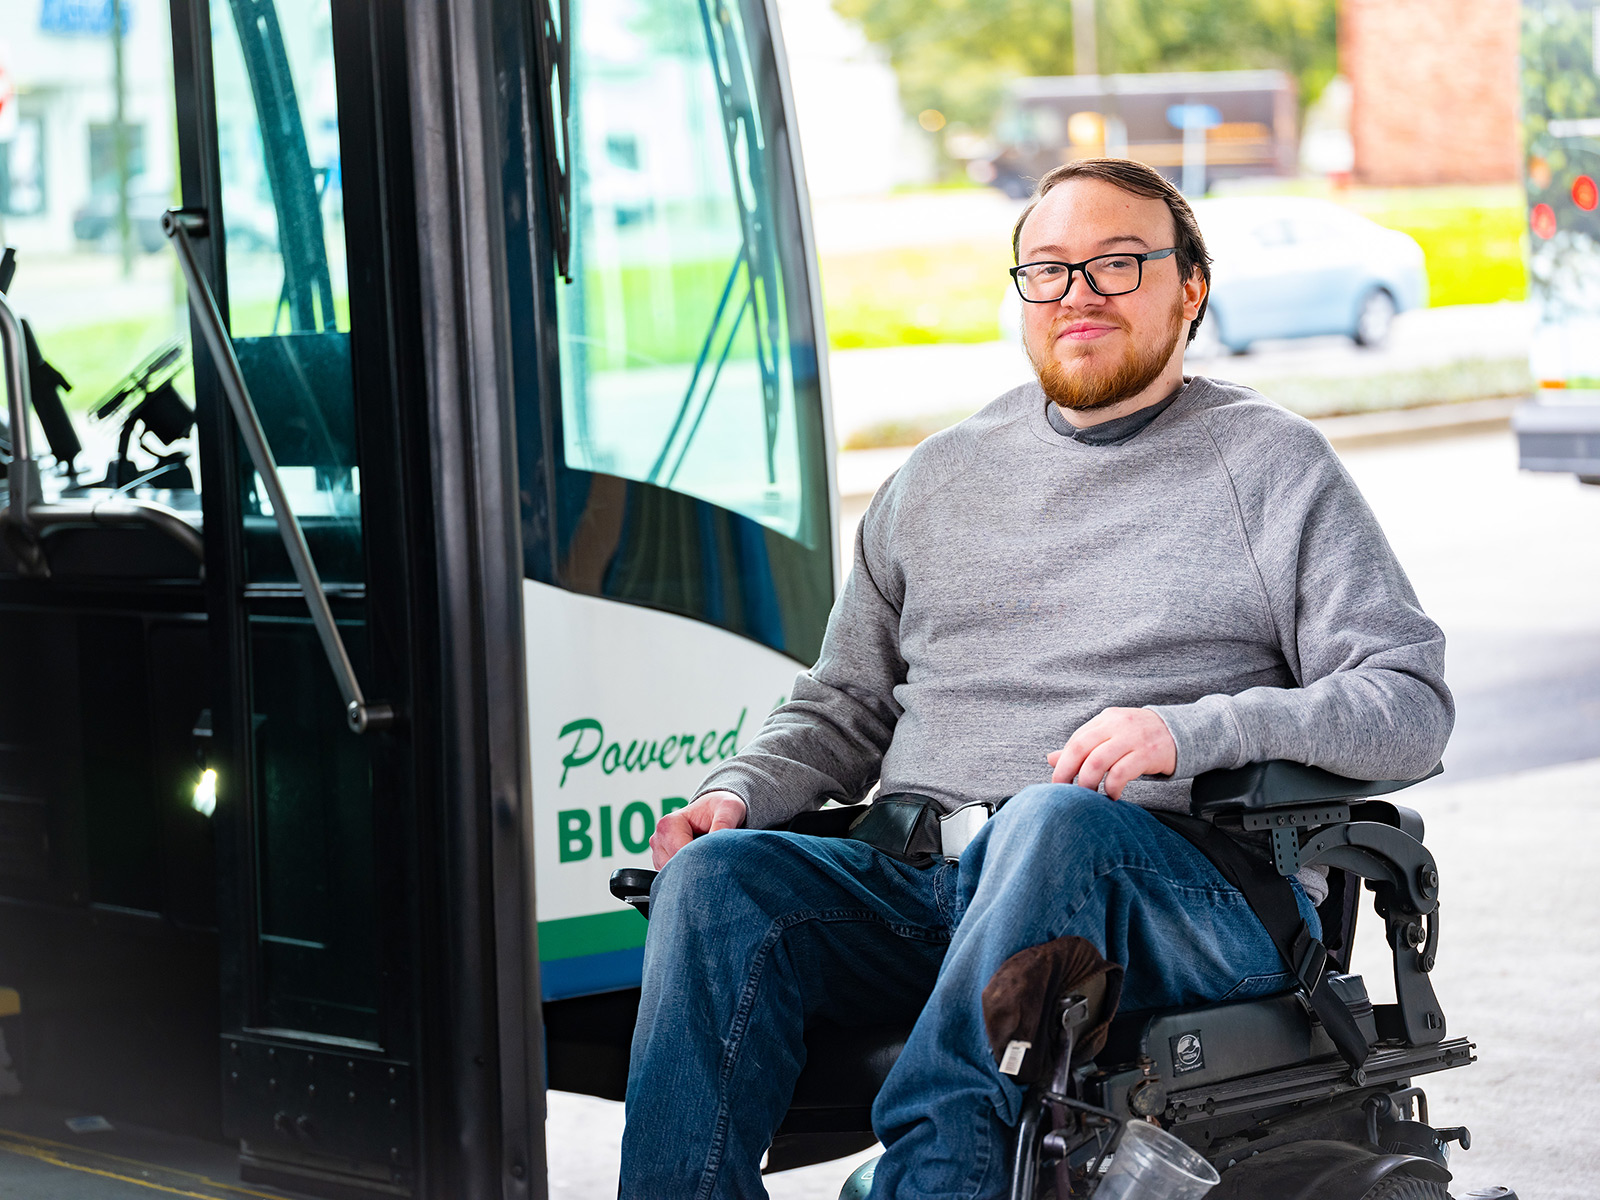 Afiliado de Medicaid en silla de ruedas esperando el transporte